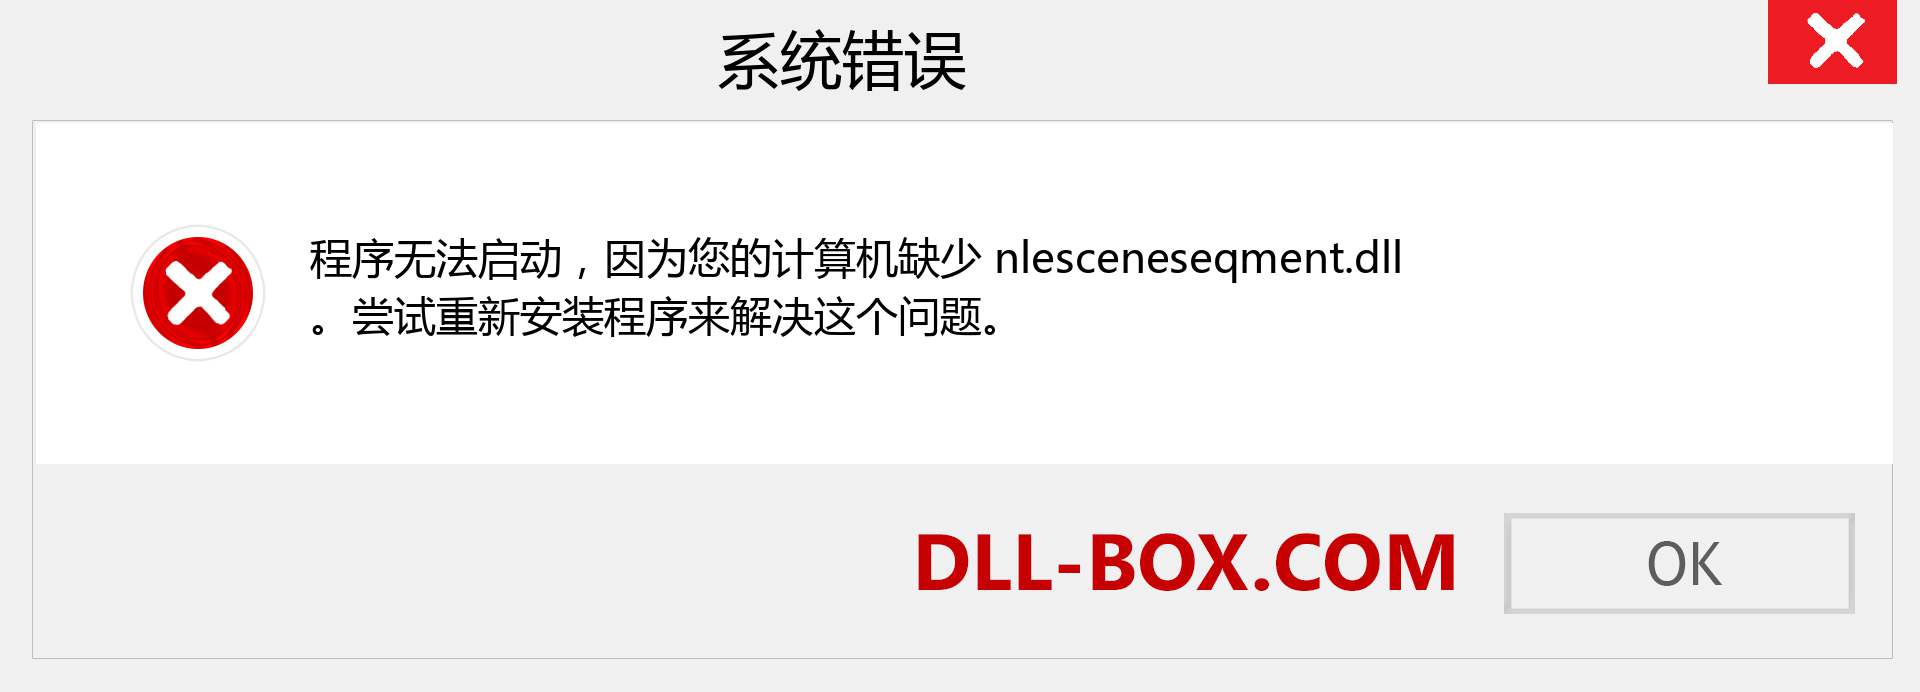 nlesceneseqment.dll 文件丢失？。 适用于 Windows 7、8、10 的下载 - 修复 Windows、照片、图像上的 nlesceneseqment dll 丢失错误